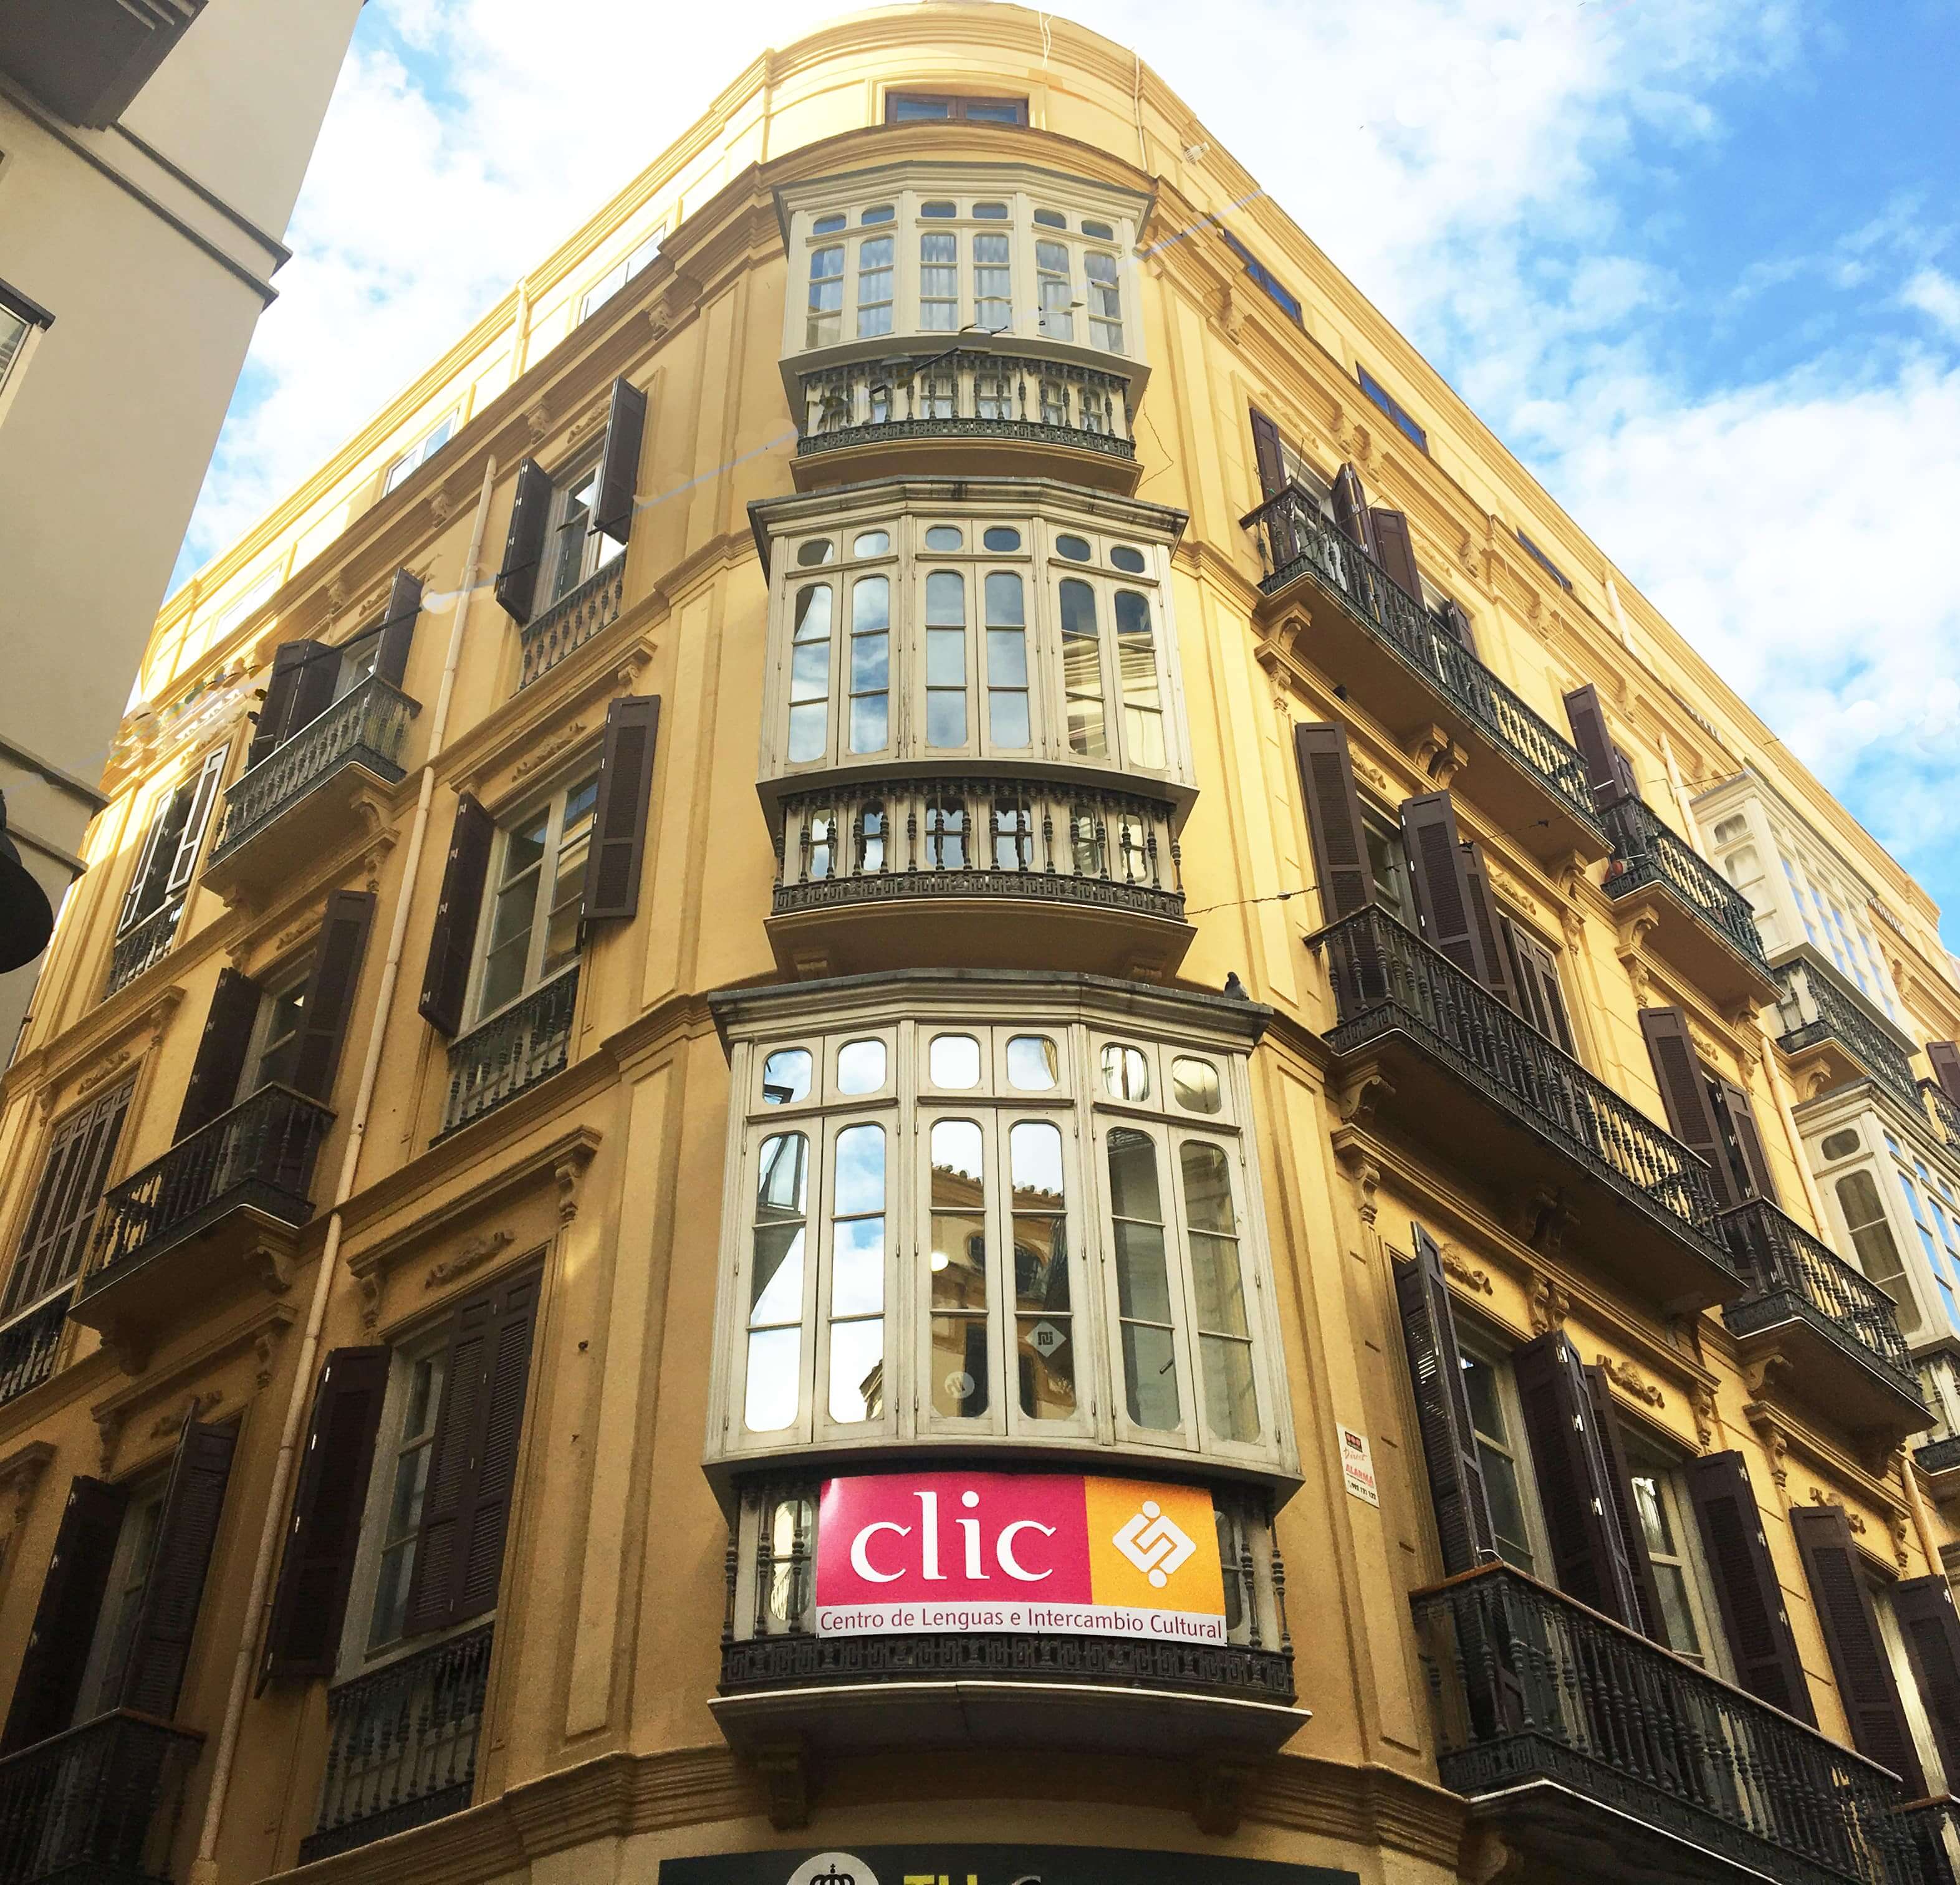 Séjour linguistique espagnol à Malaga